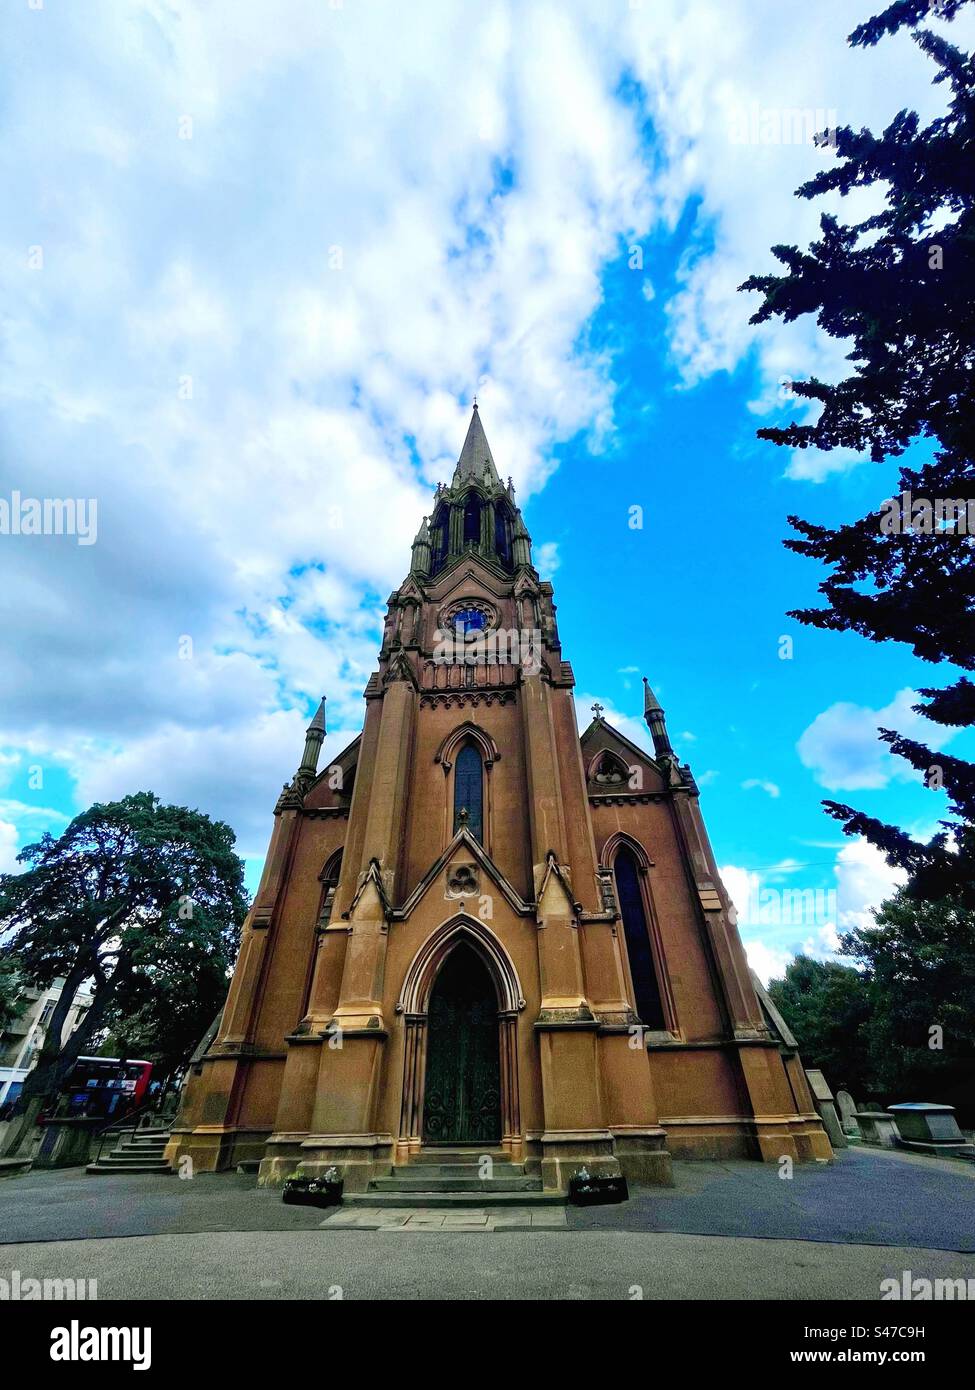 St. Margaret of Antioch Church in Lee, Südostlondon, von vorne gesehen mit Turm. Gotik-Revival von John Brown, Architekt von 1839 bis 1841 Stockfoto